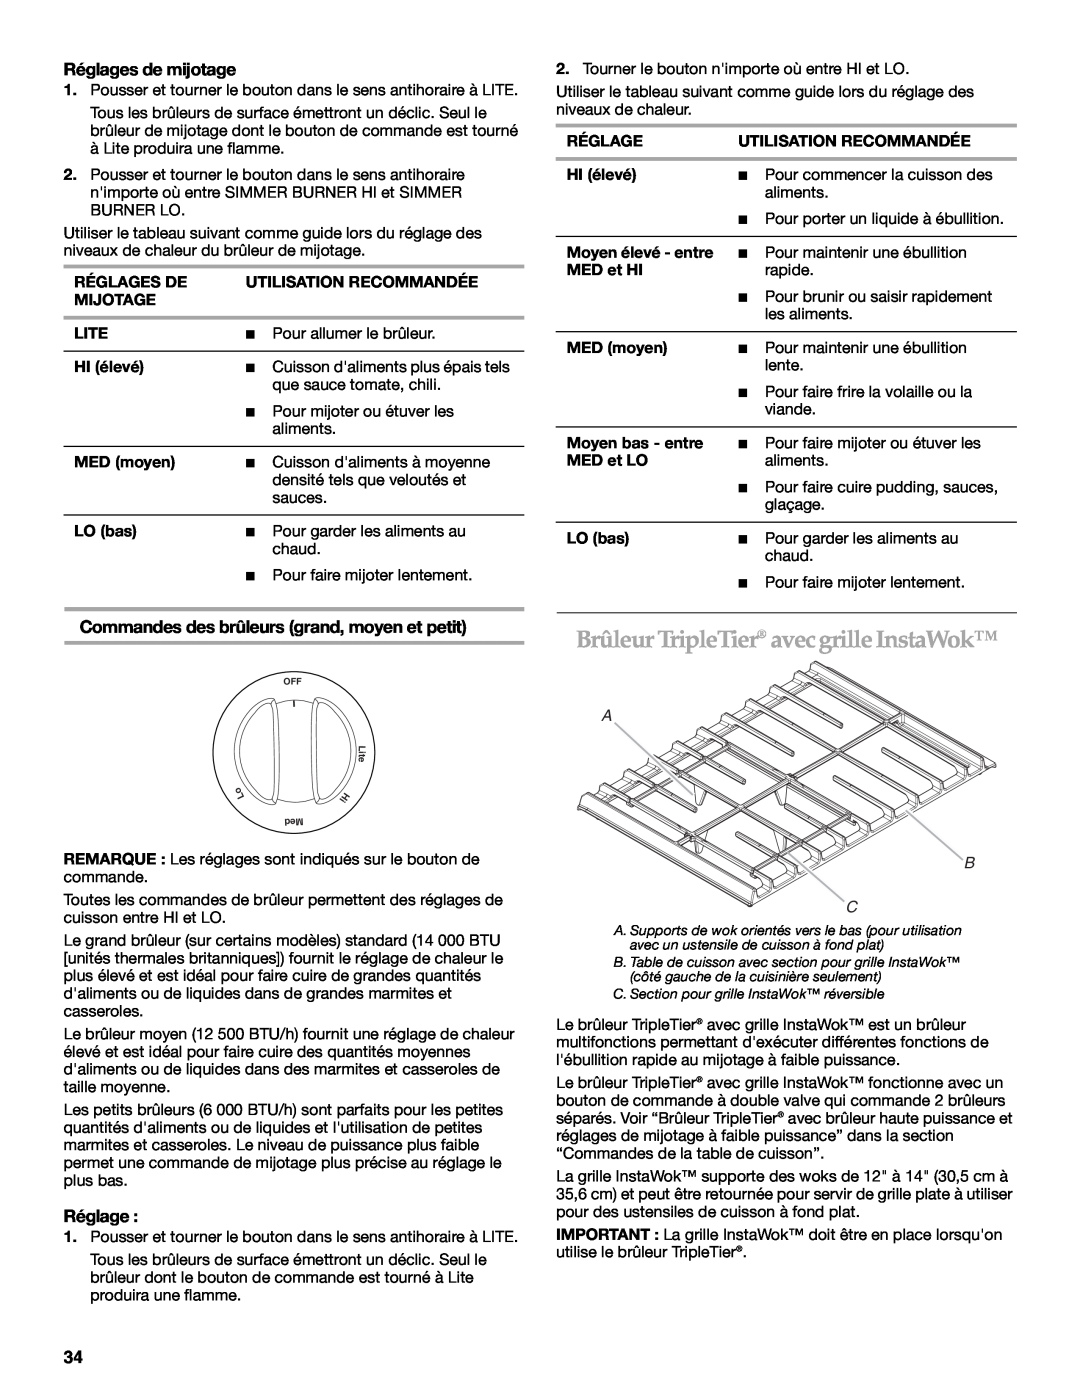 KitchenAid 9763457, KGRS807 manual Brûleur TripleTier avecgrille InstaWok, Réglages de mijotage, A B C 